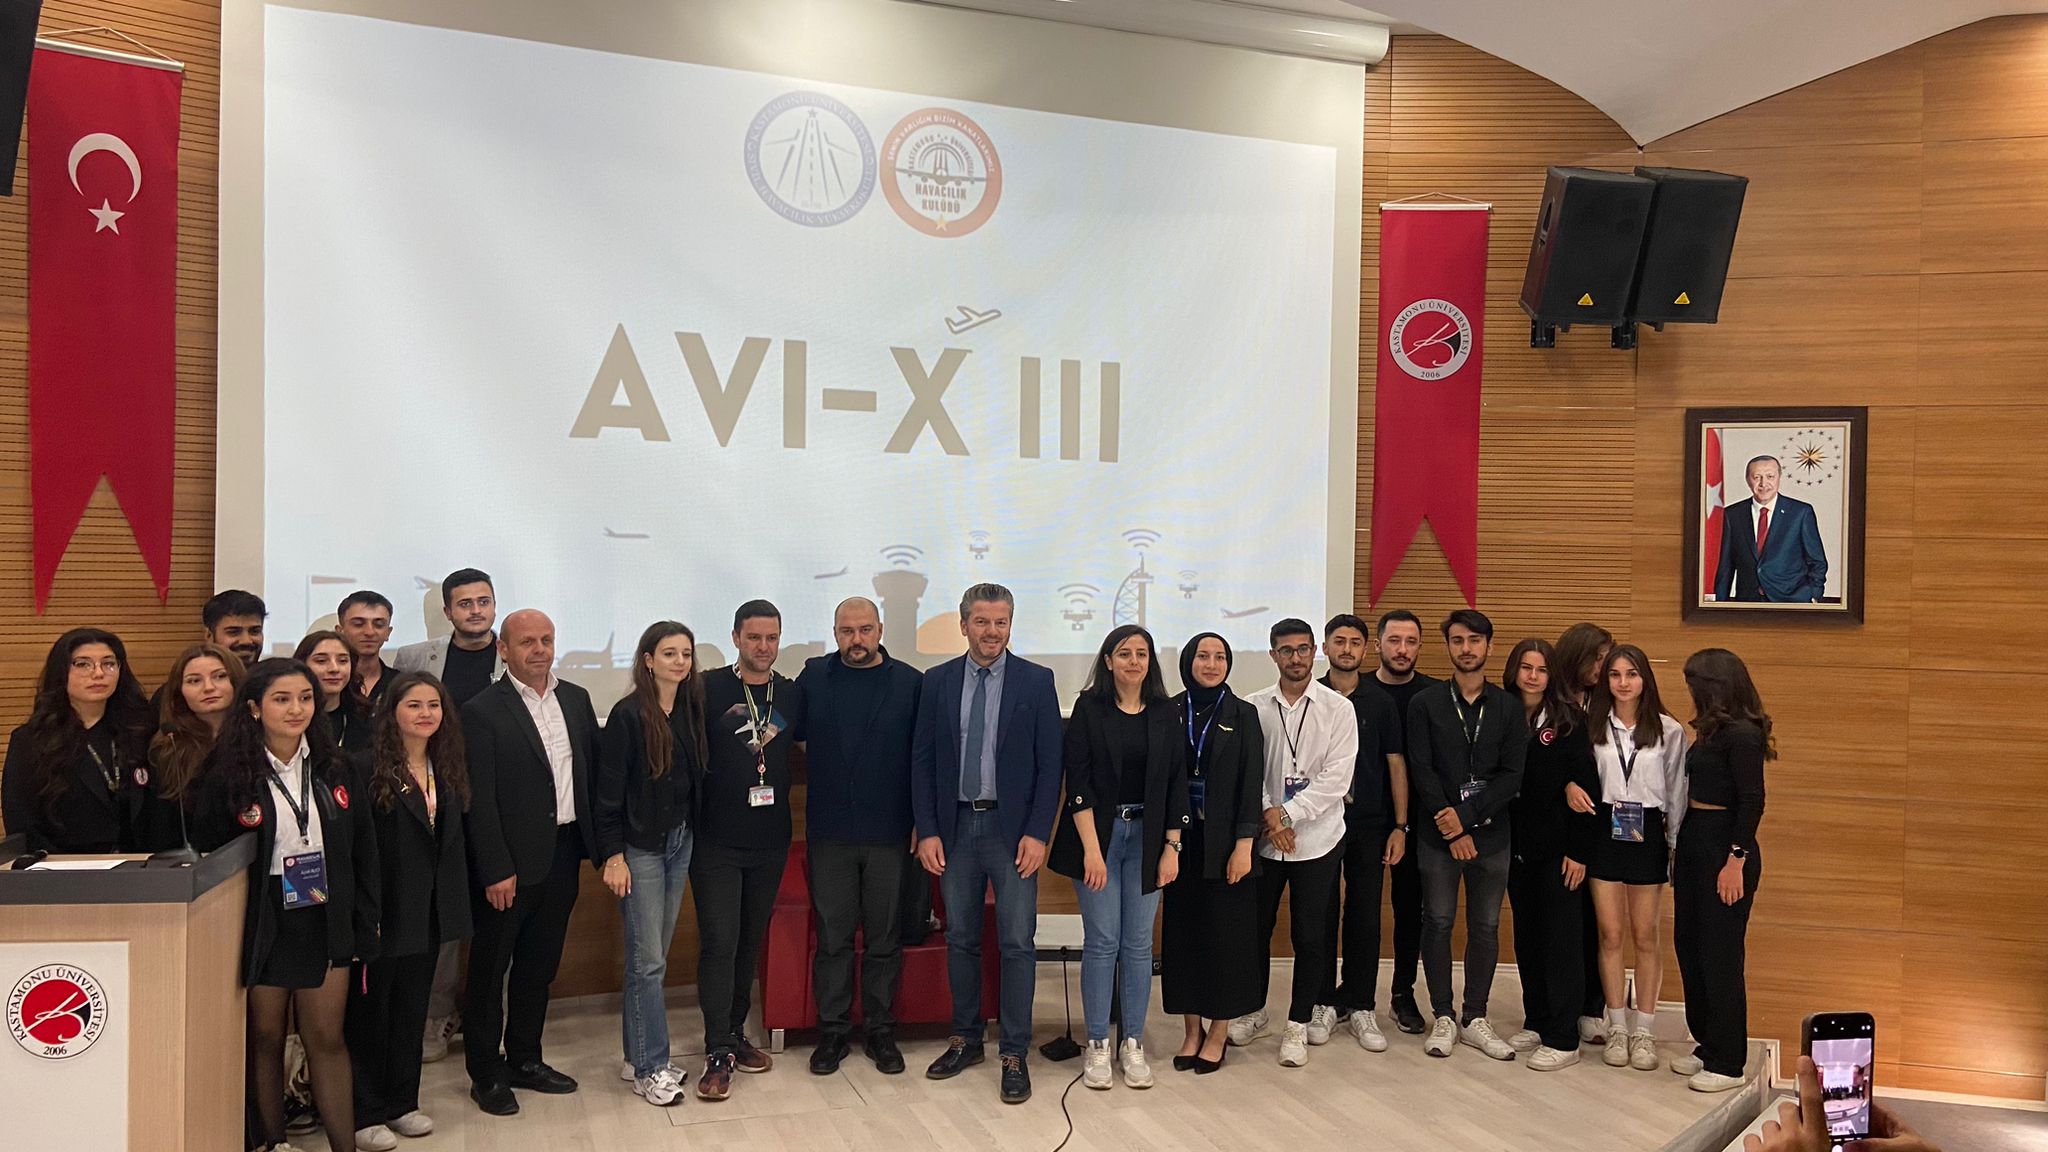 Kastamonu Üniversitesi Sivil Havacılık Yüksekokulu AVI-X III konferansı düzenledi. 